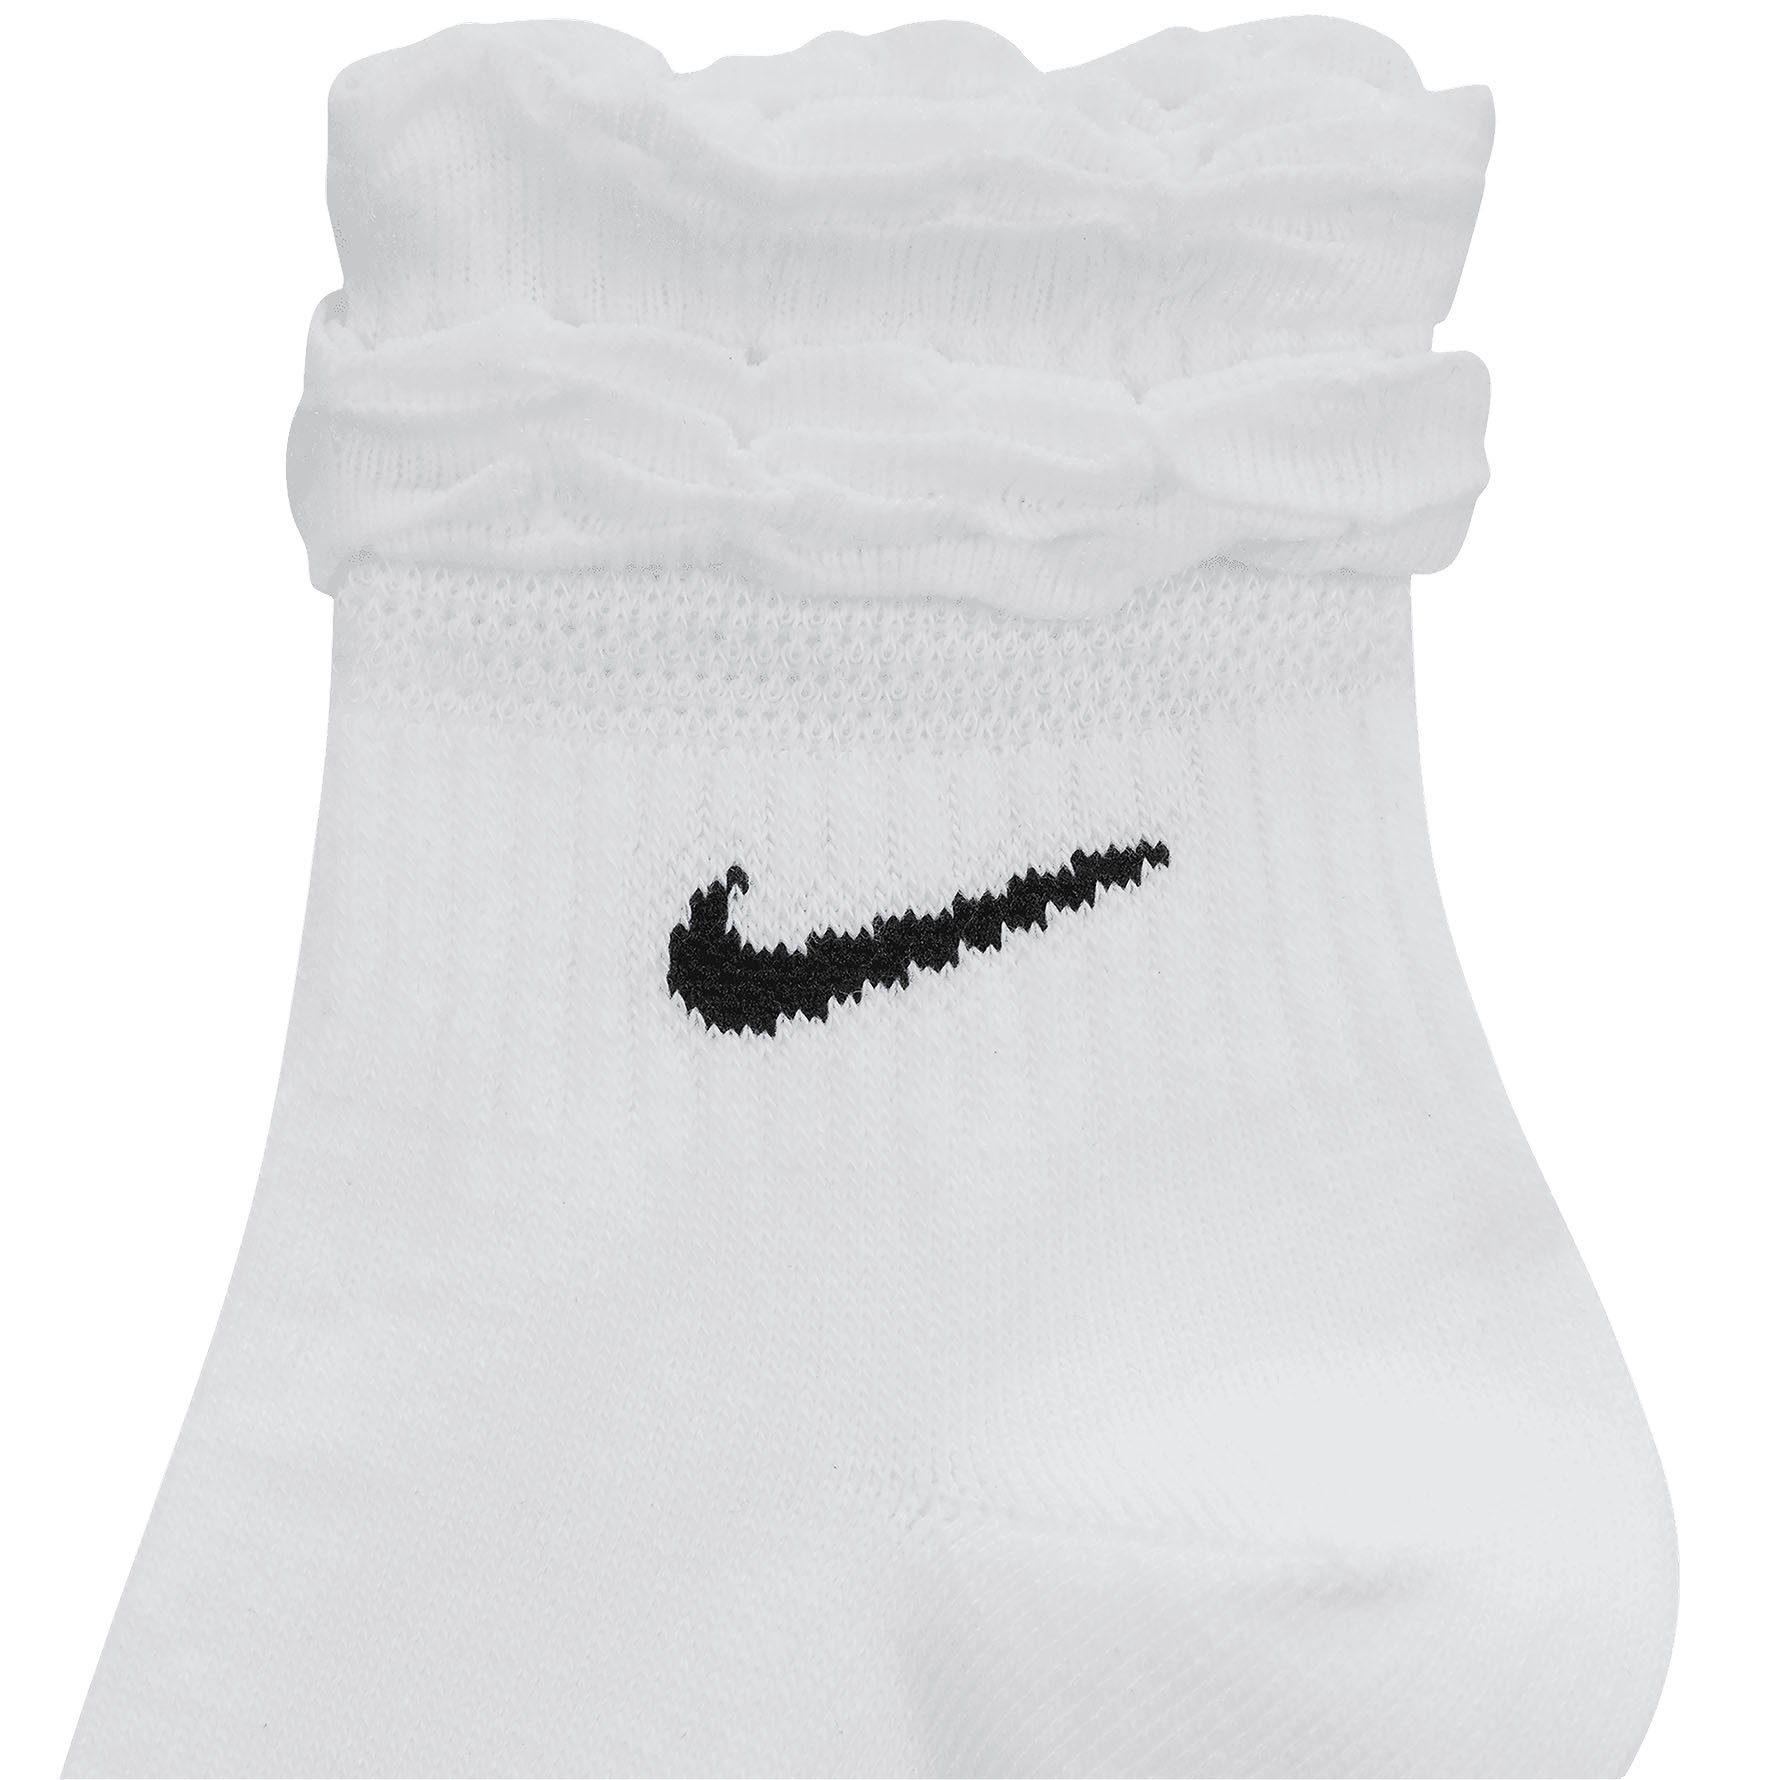 Nike Funktionssocken Everyday Training Ankle Socks WHITE/BLACK